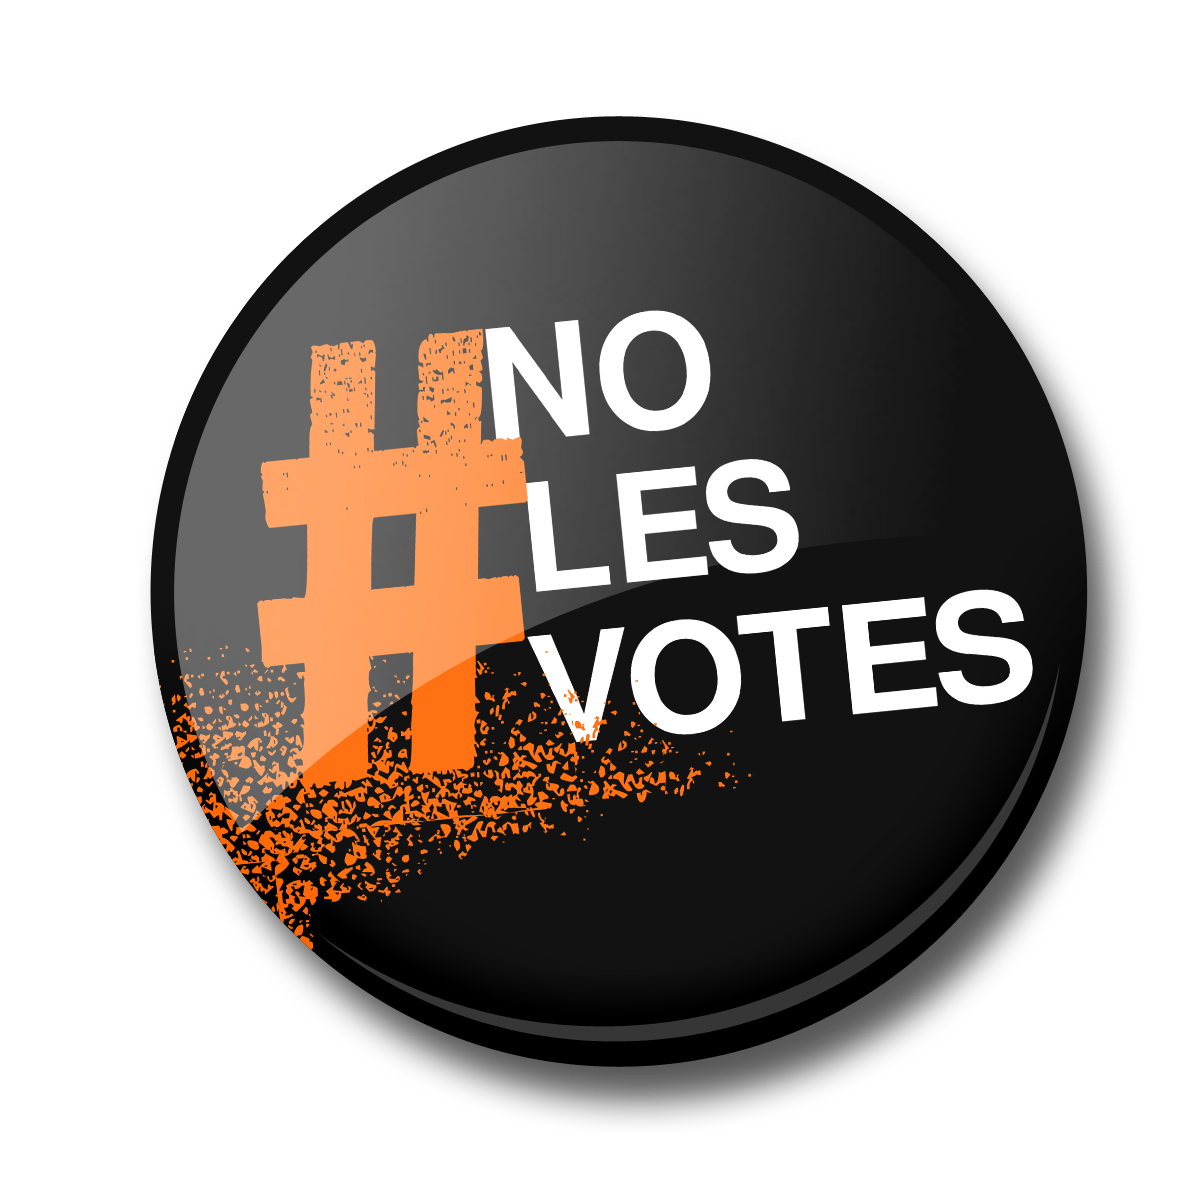 #NoLesVotes